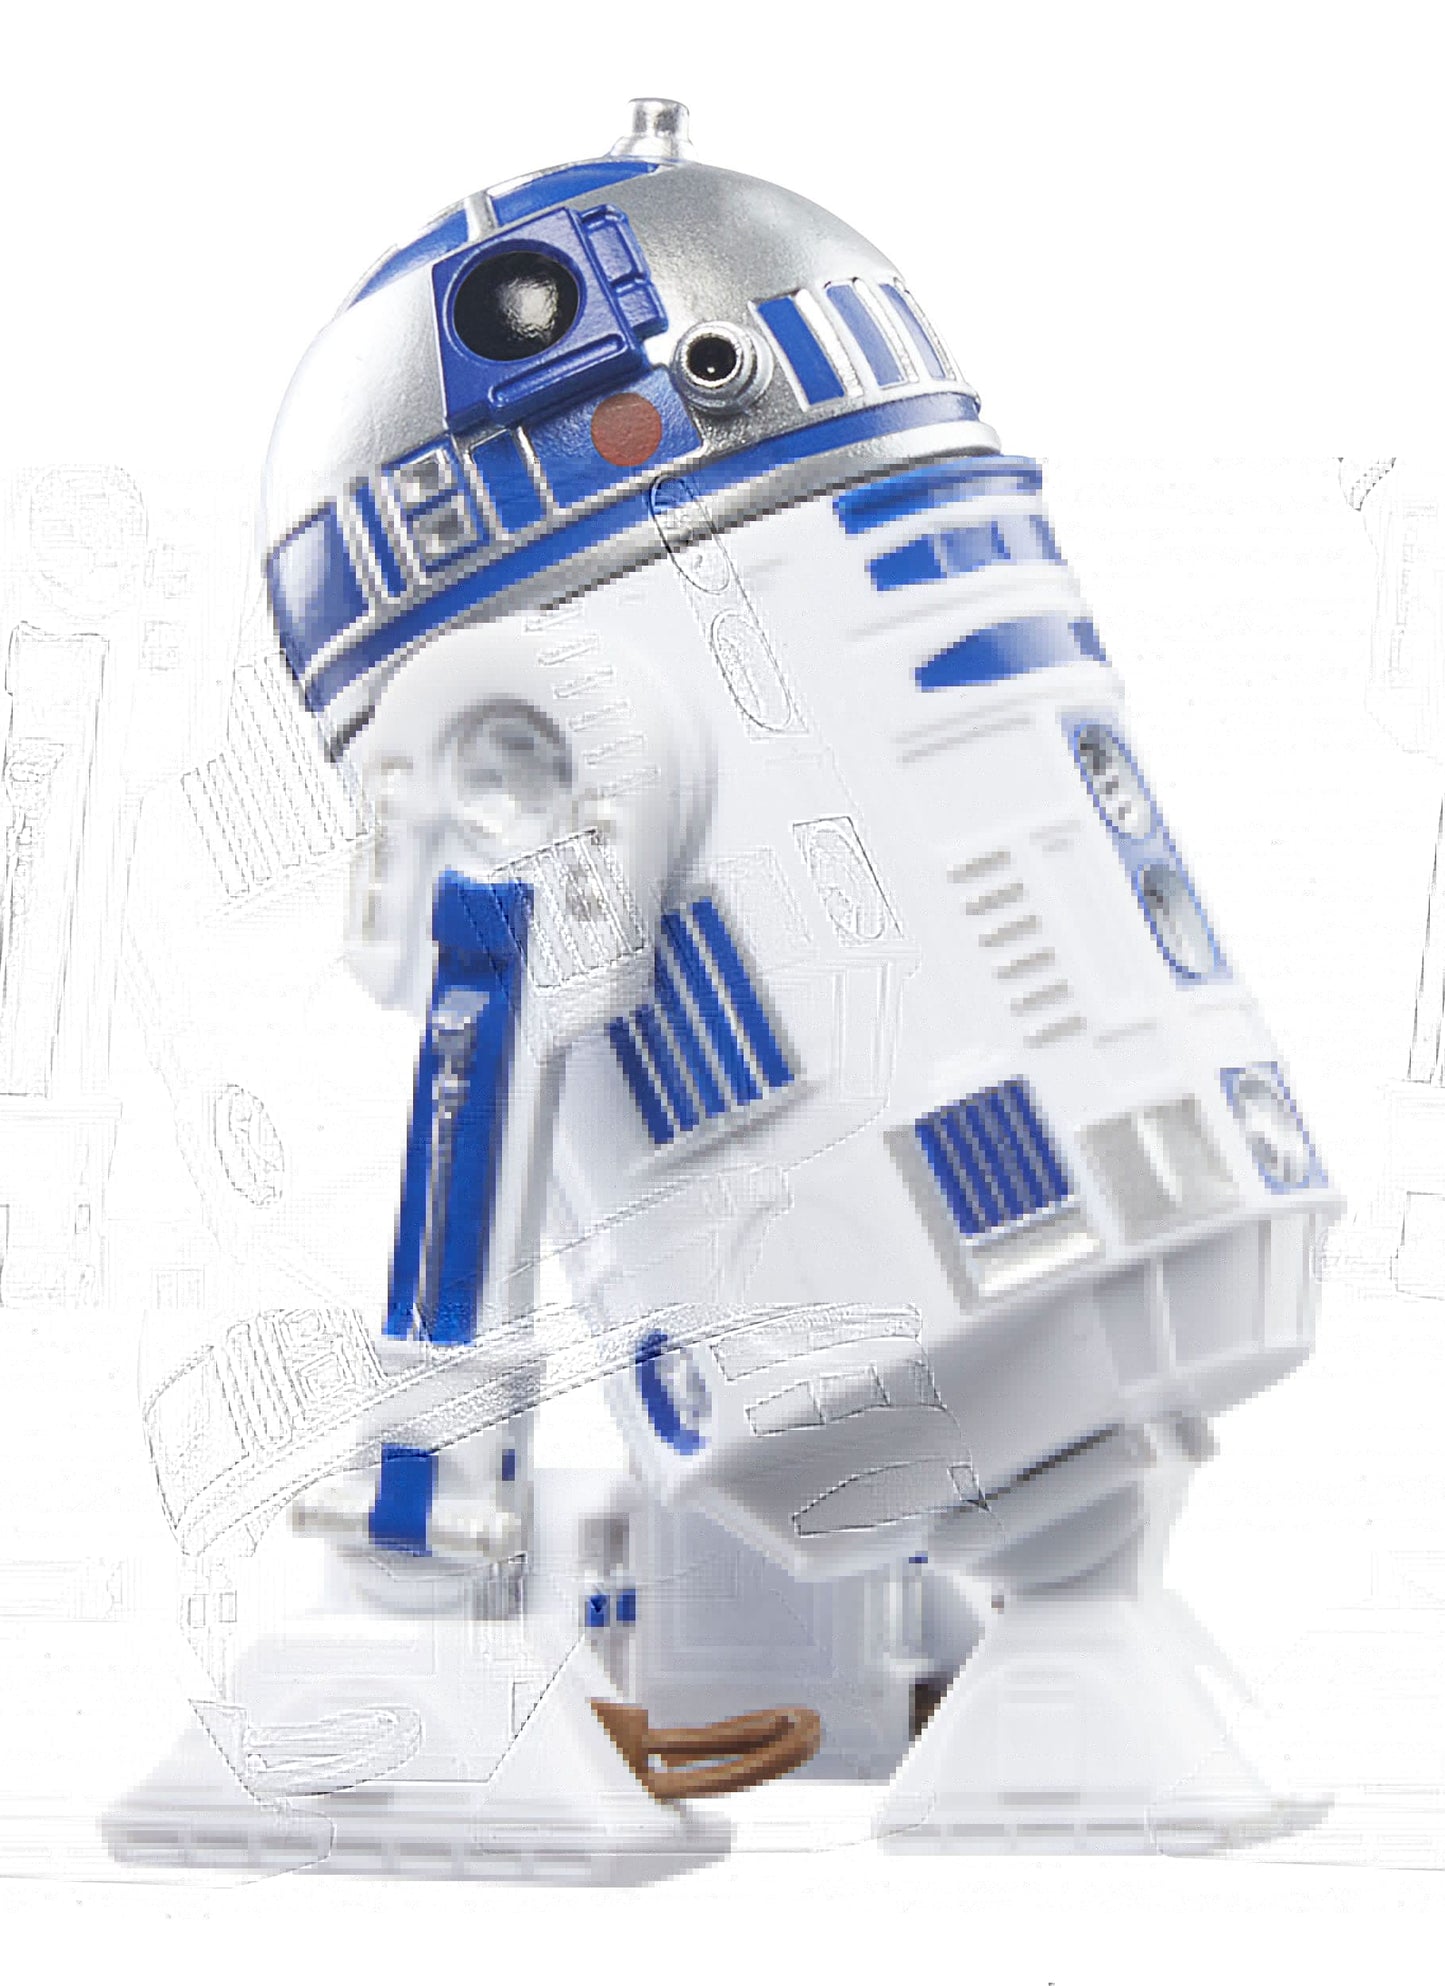 Pre-Order! Star Wars Vintage Collection Episode IV Actionfigur Artoo-Detoo (R2-D2) 10cm